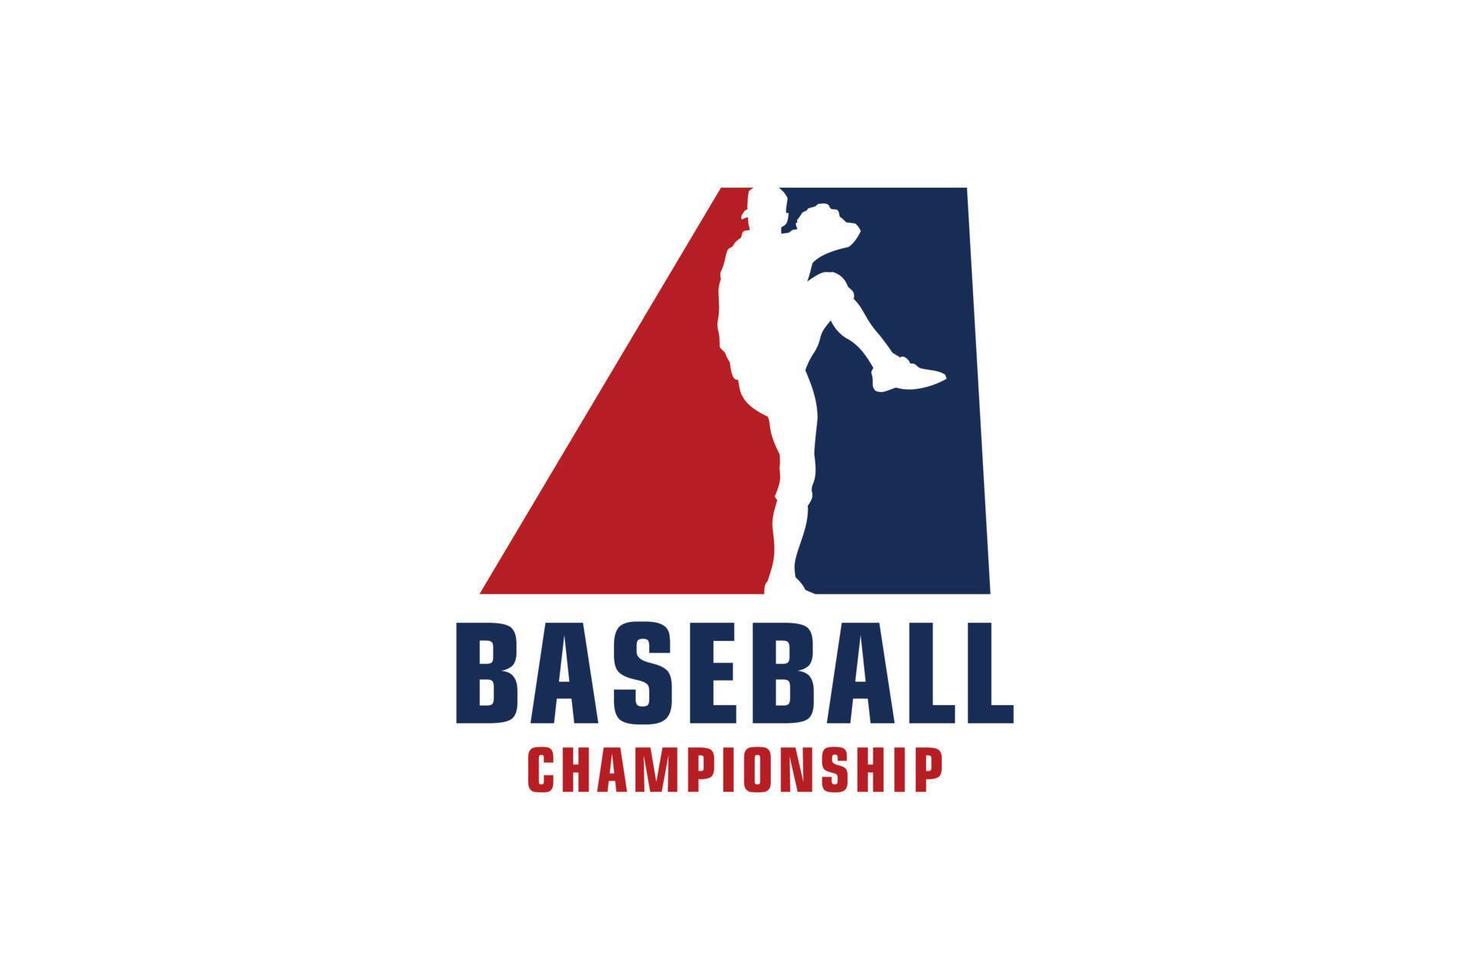 lettre a avec création de logo de baseball. éléments de modèle de conception de vecteur pour l'équipe sportive ou l'identité d'entreprise.